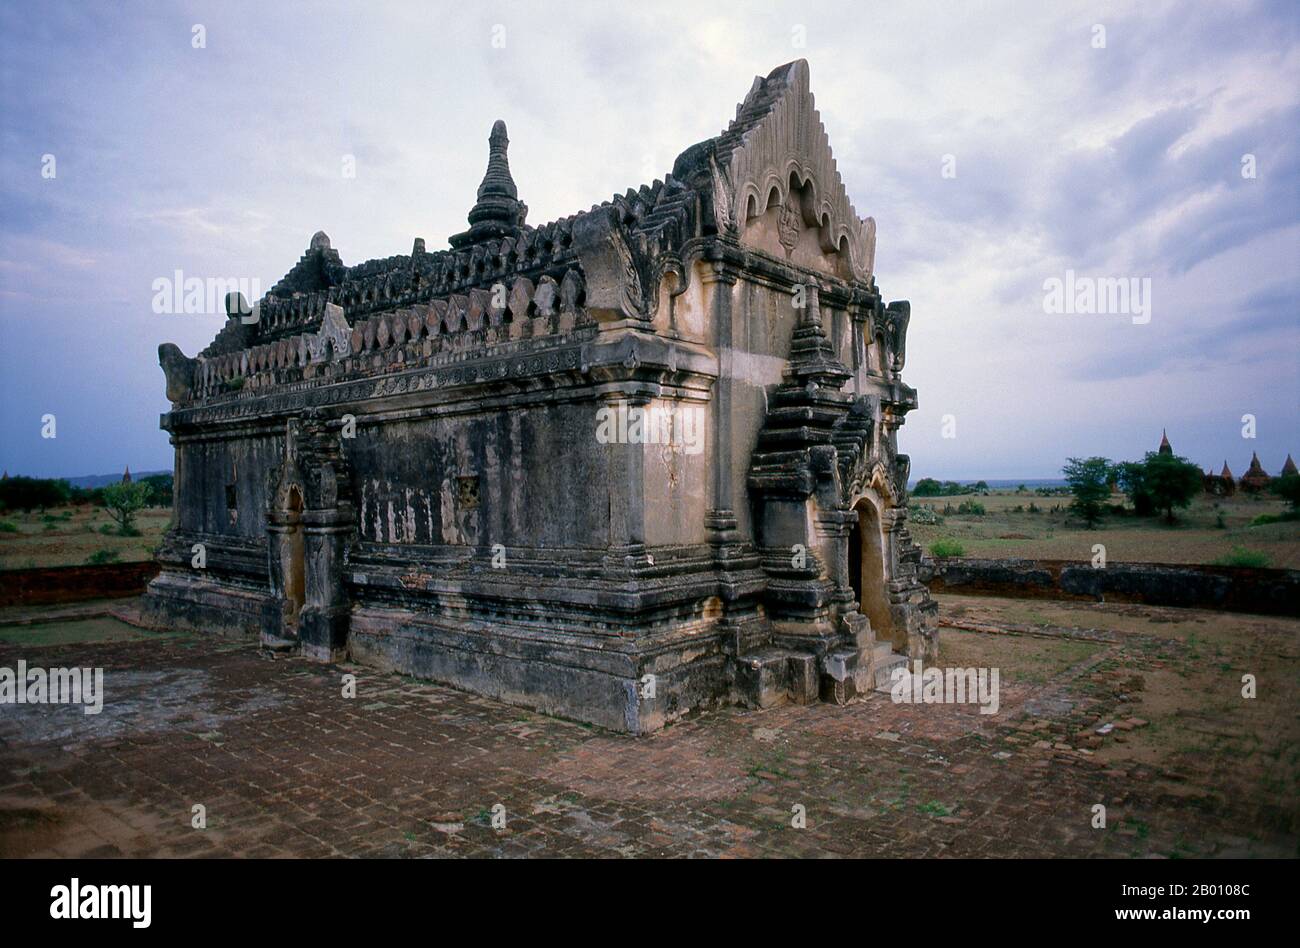 Birmania: Upali Thein, Bagan (Pagan) Città Antica. Uppali Thein è una sala di ordinazione buddista situata tra Bagan e Nyaung U in Myanmar. Costruito durante il regno di re Anawrahta (1014-1077), i suoi affreschi interni ben conservati furono realizzati nel 1794-1795 durante la dinastia Konbaung. Bagan, ex Pagan, è stato costruito principalmente tra il 11 ° secolo e 13 ° secolo. Formalmente chiamato Arimaddanapura o Arimaddana (la città del Crusher Enemy) e conosciuto anche come Tambadipa (la terra del rame) o Tassadessa (la terra dei cortei), era la capitale di diversi regni antichi in Birmania. Foto Stock